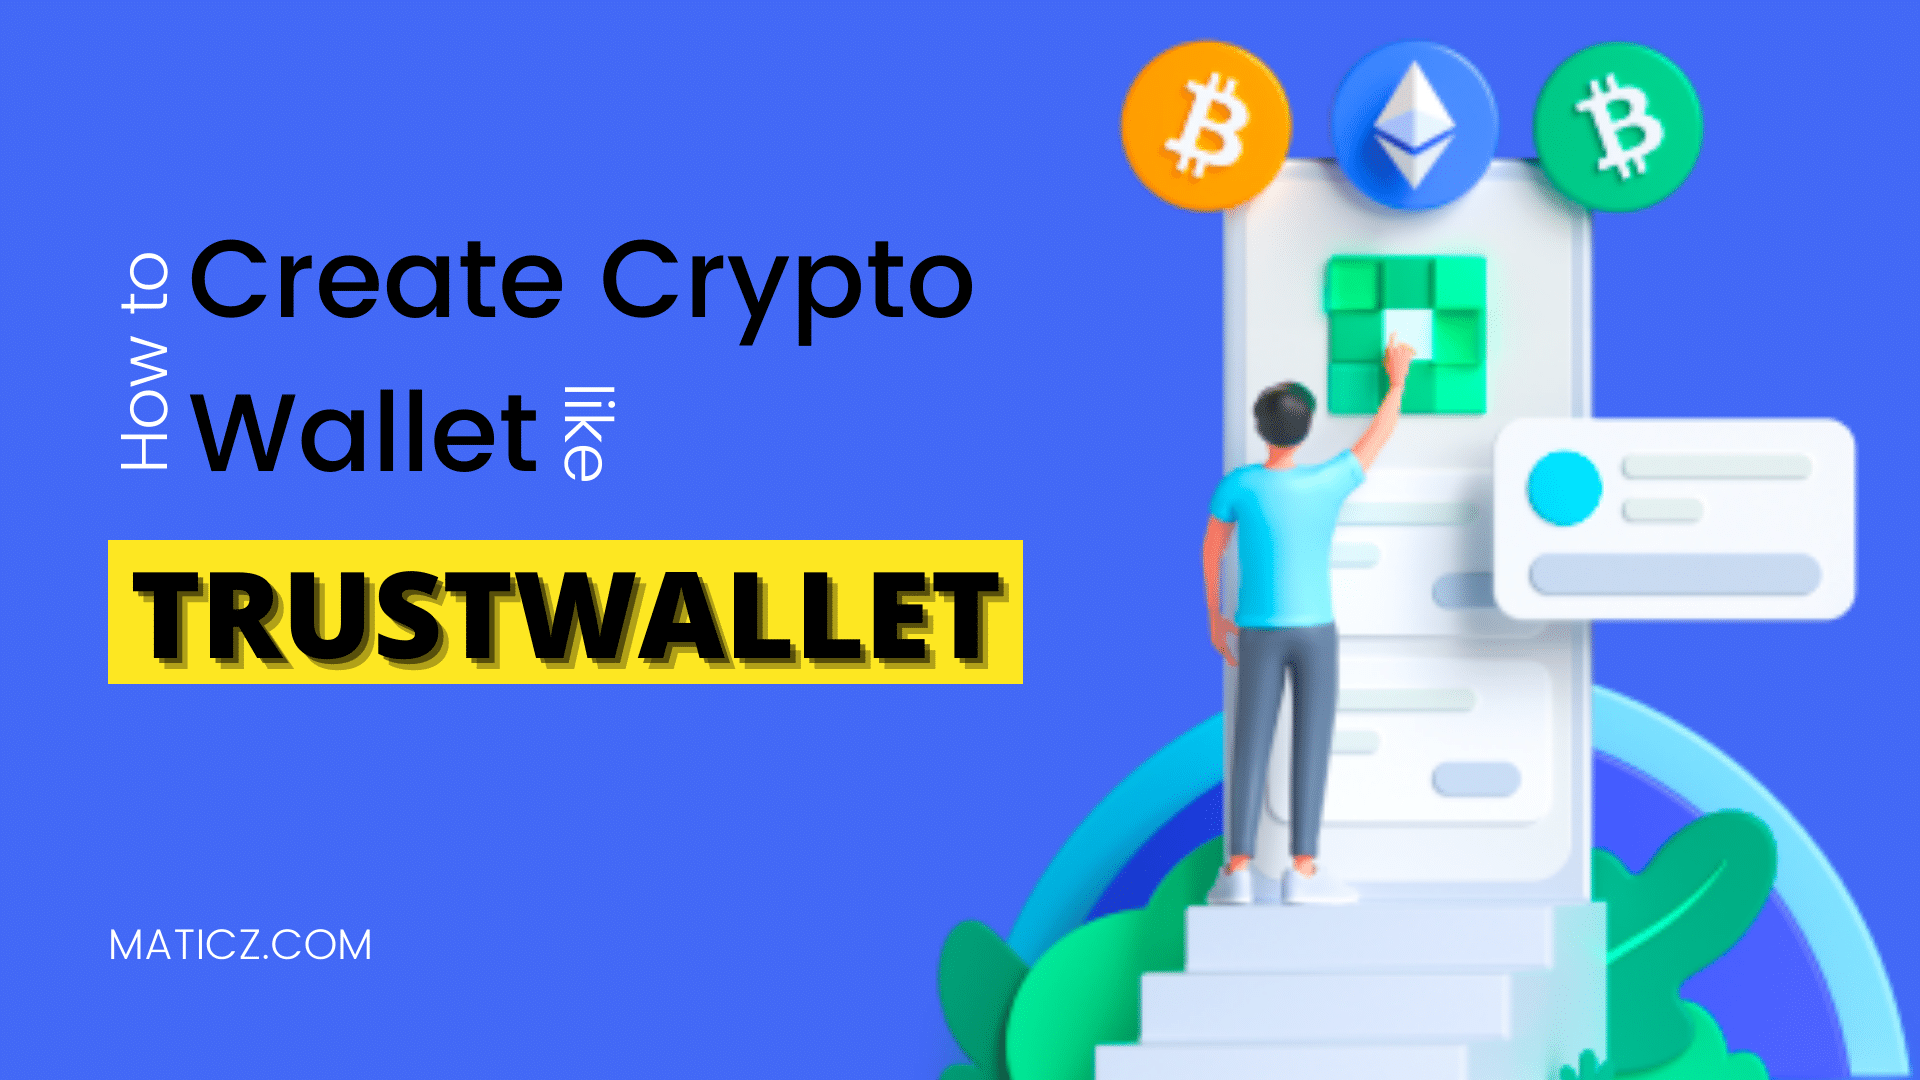 create crypto wallet like trustwallet-0de4f878